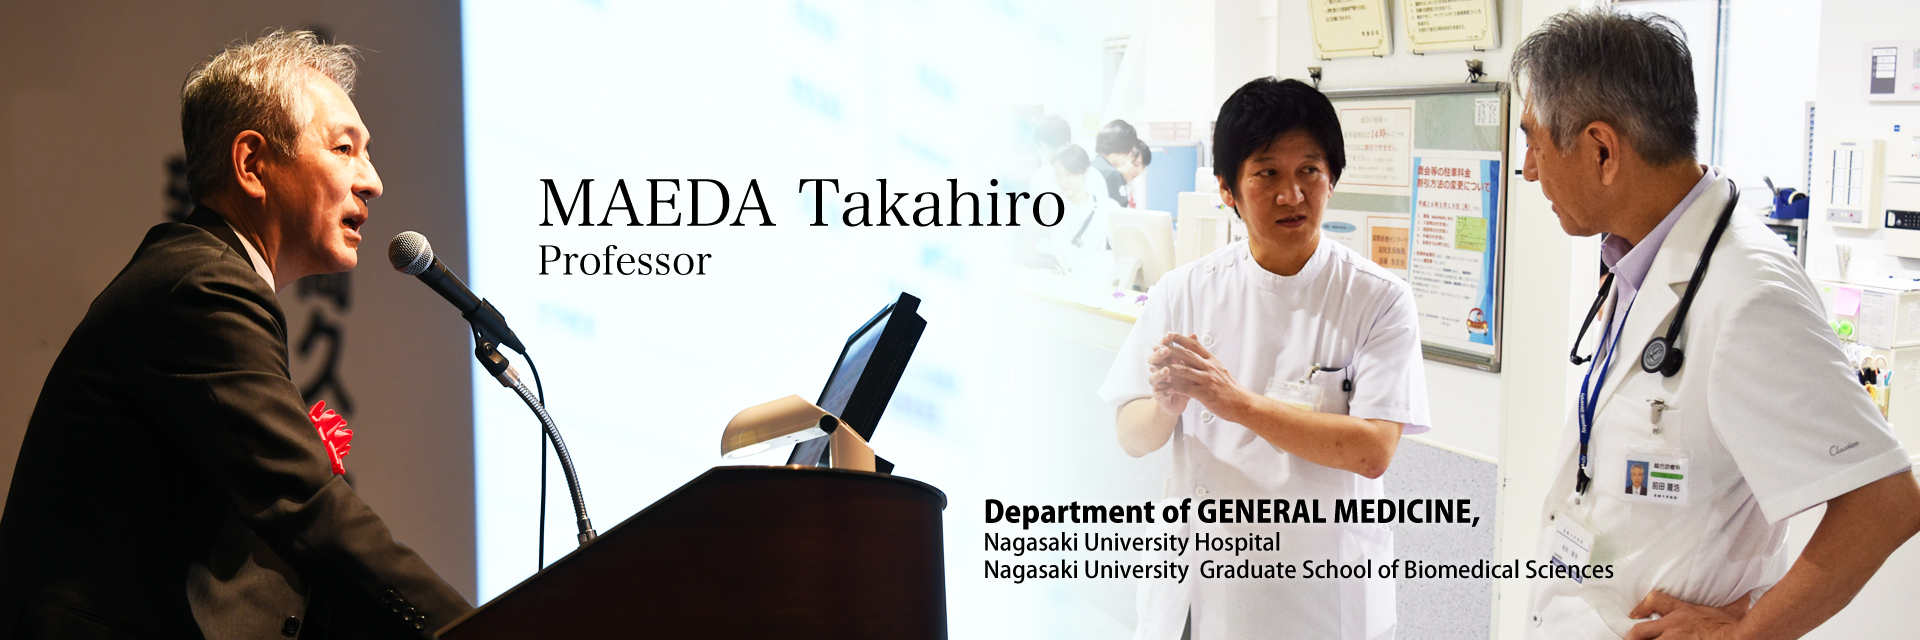 Department of GENERAL MEDICINE, Nagasaki University